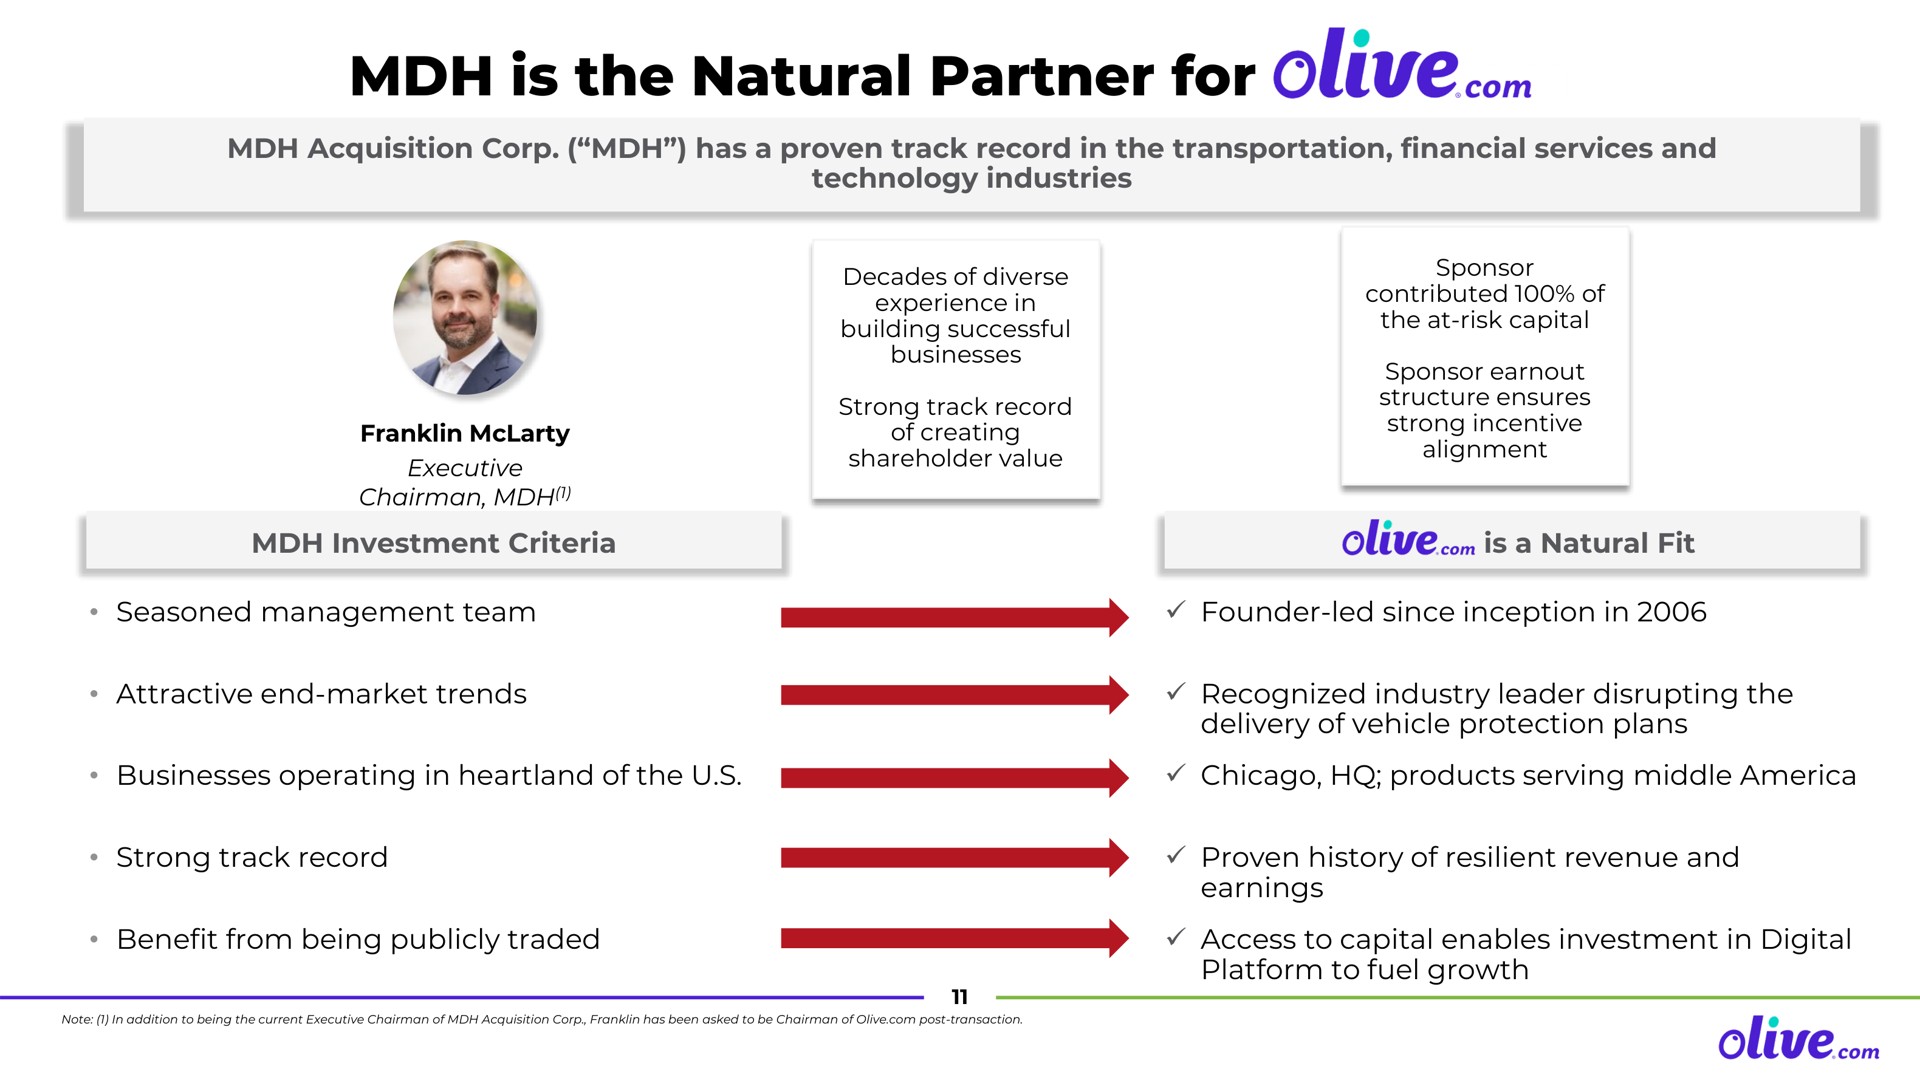 is the natural partner for olive i i | Olive.com